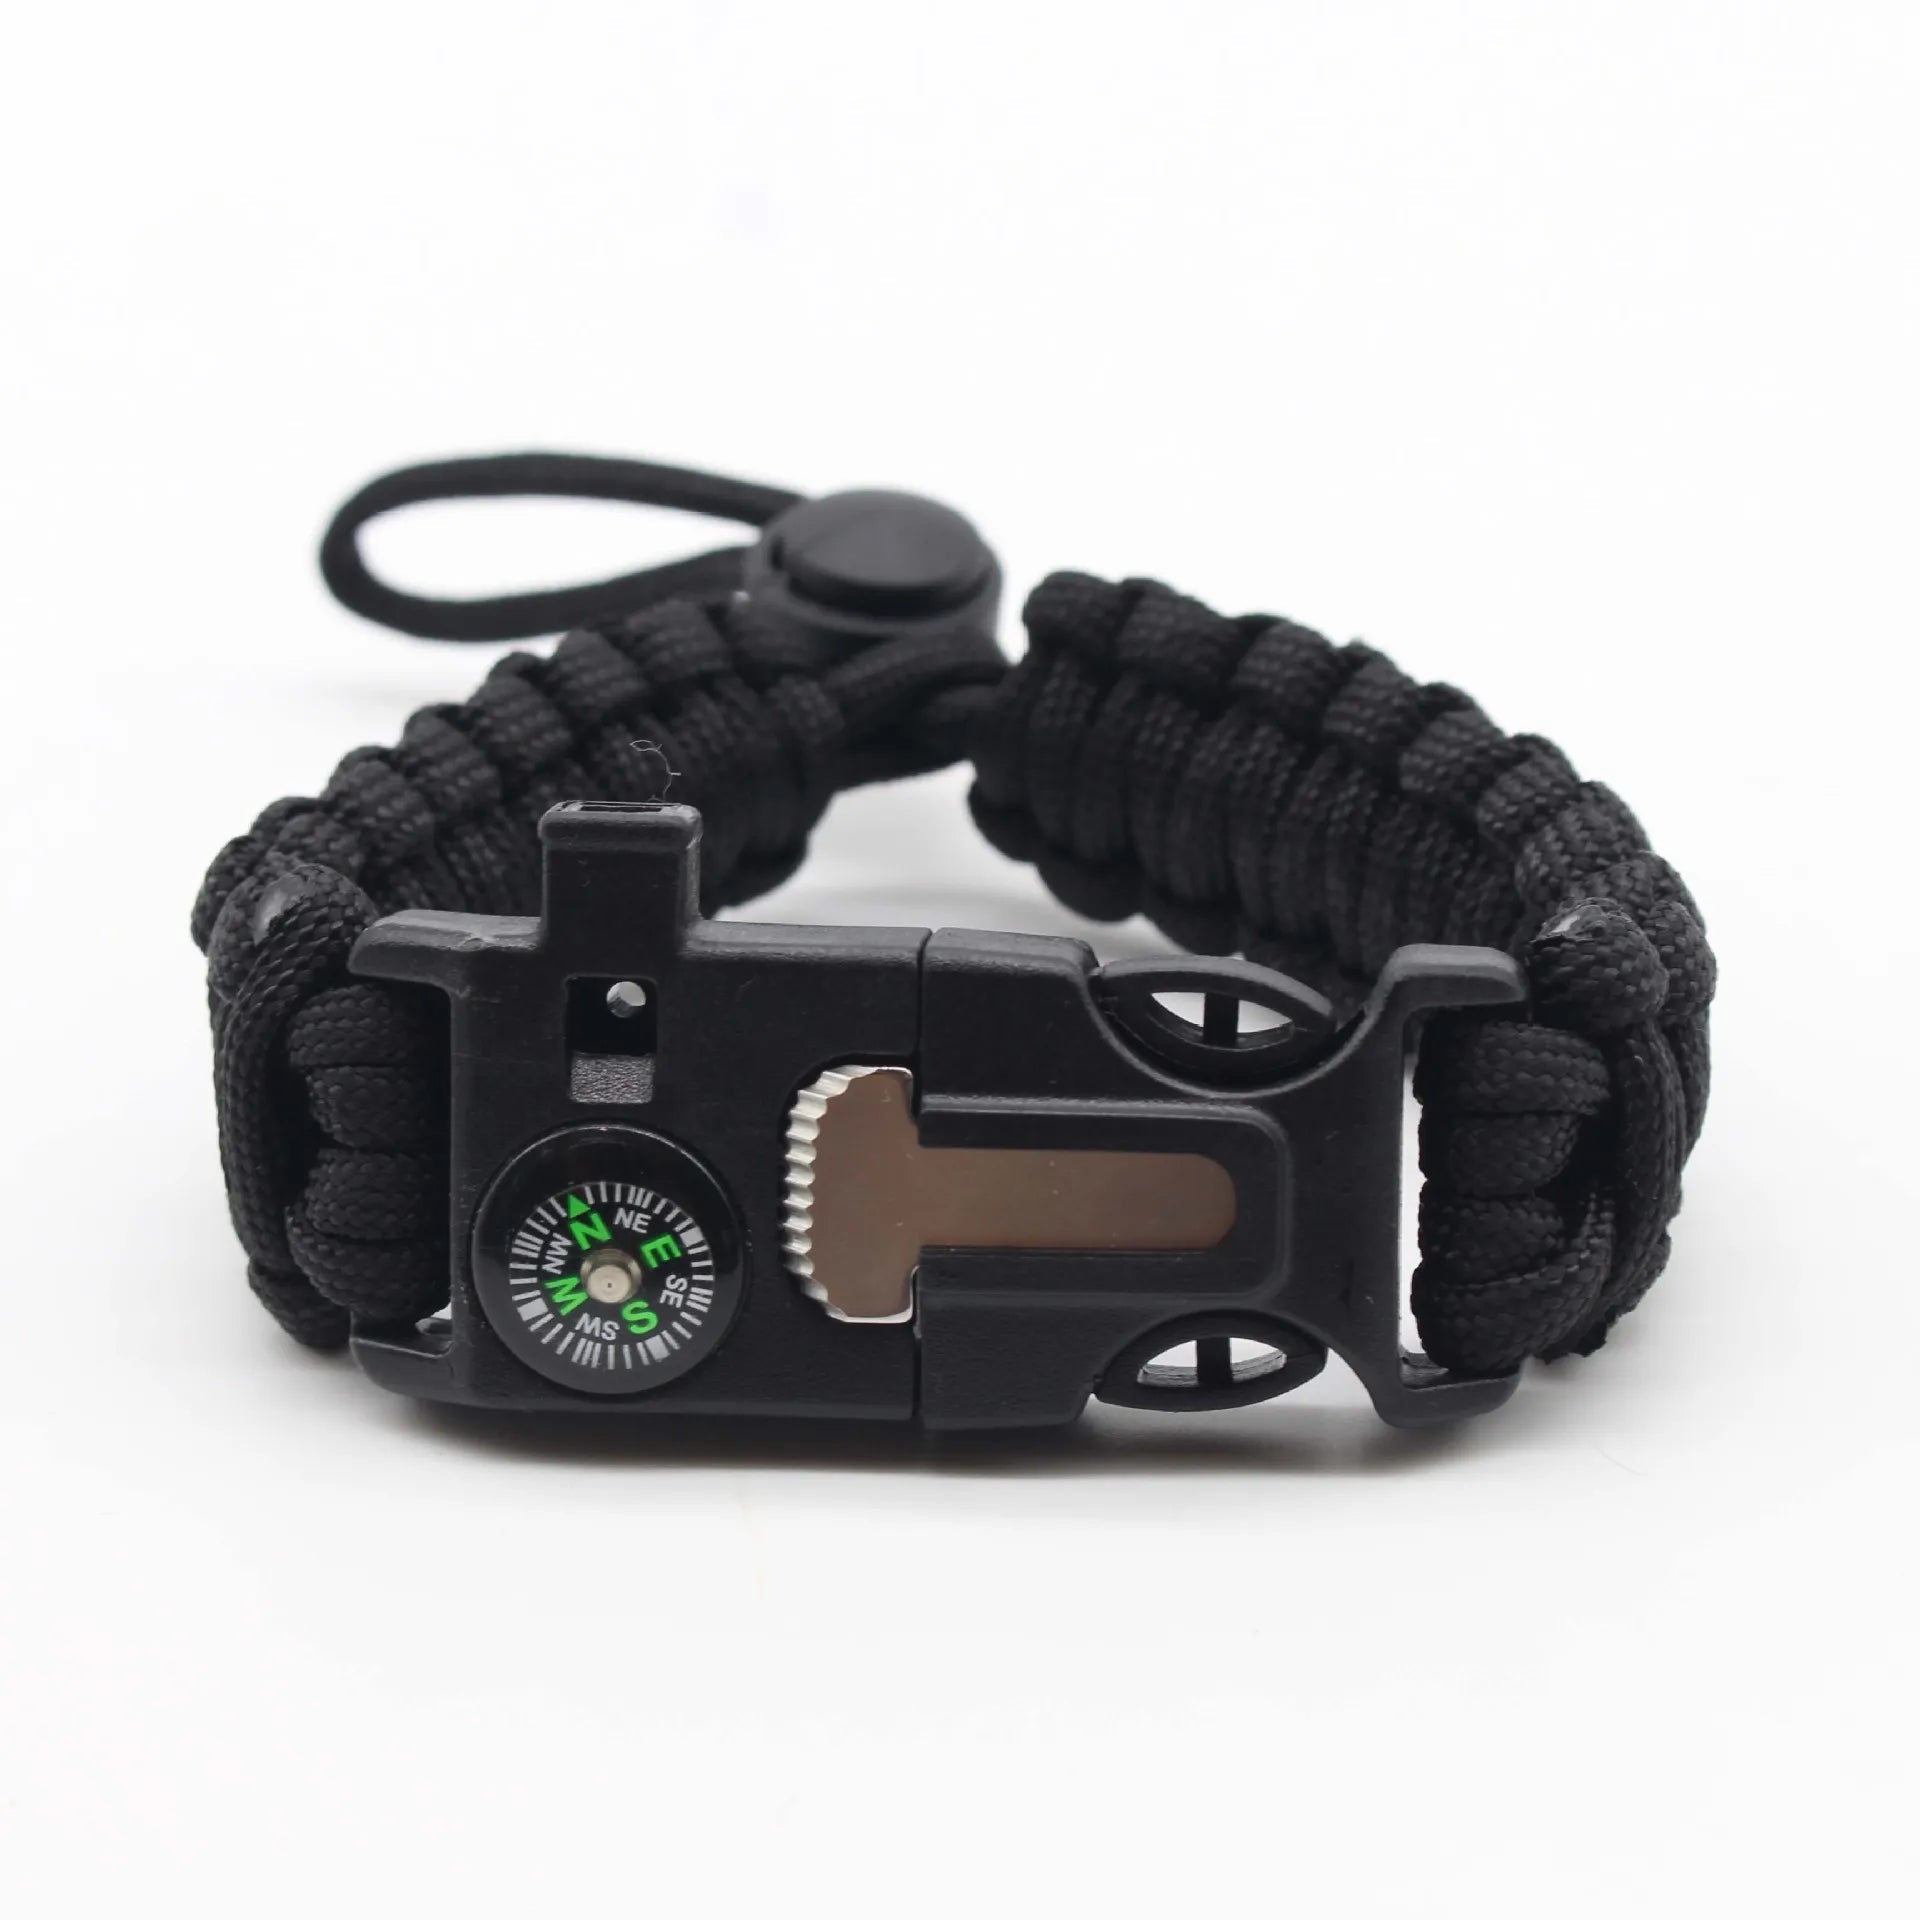 http://hikeware.co.uk/cdn/shop/products/parachute-cord-survival-bracelet-858727.webp?v=1698788553